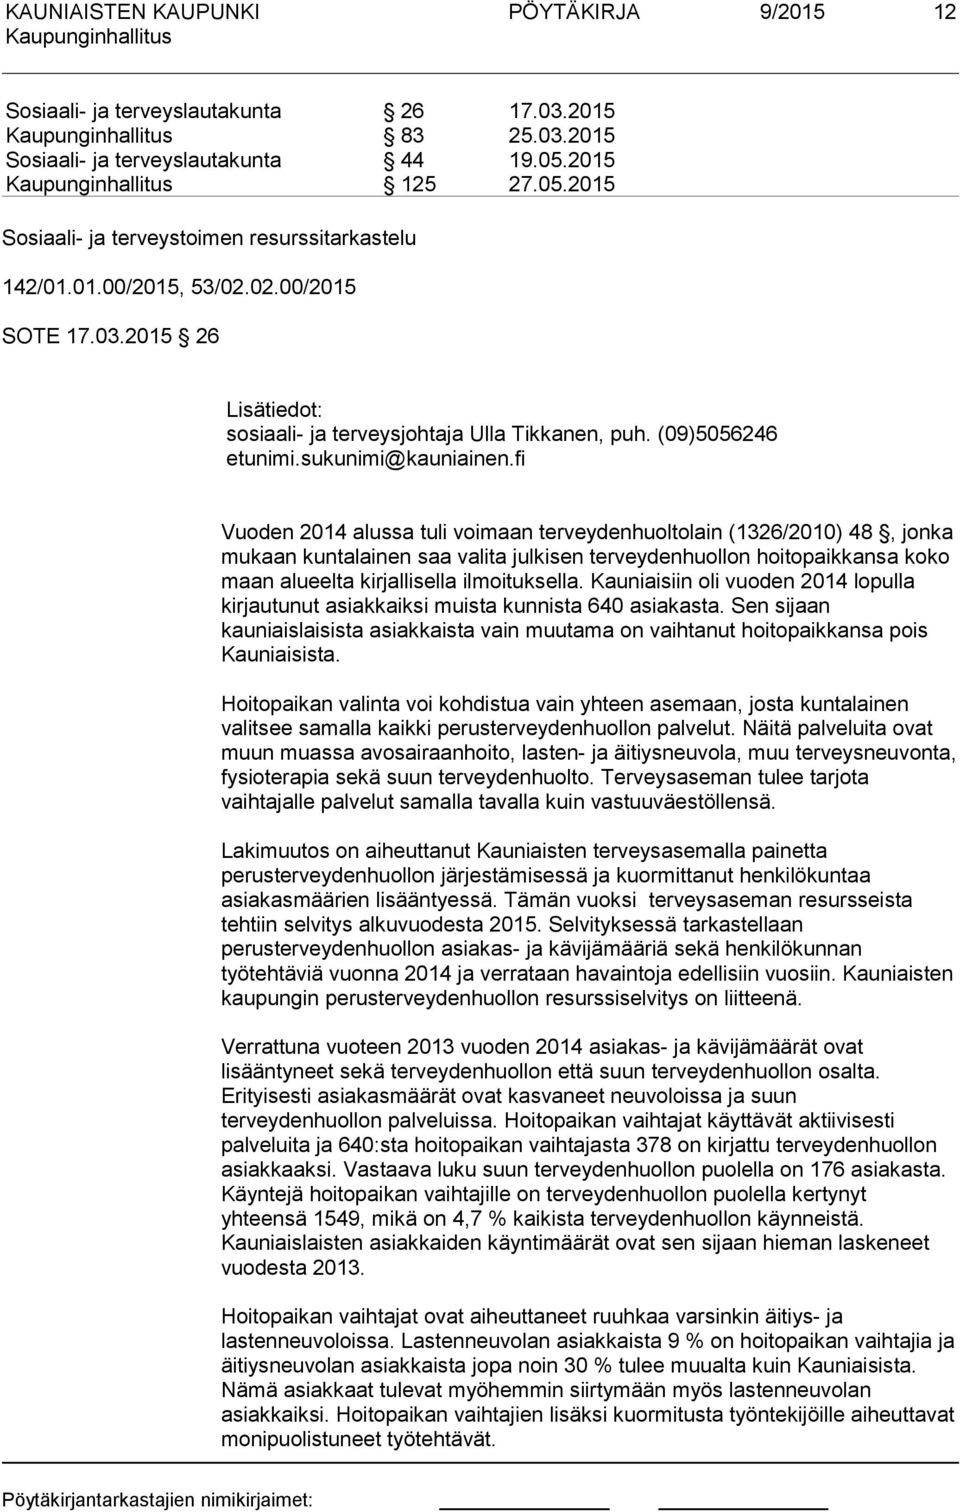 fi Vuoden 2014 alussa tuli voimaan terveydenhuoltolain (1326/2010) 48, jonka mukaan kuntalainen saa valita julkisen terveydenhuollon hoitopaikkansa koko maan alueelta kirjallisella ilmoituksella.